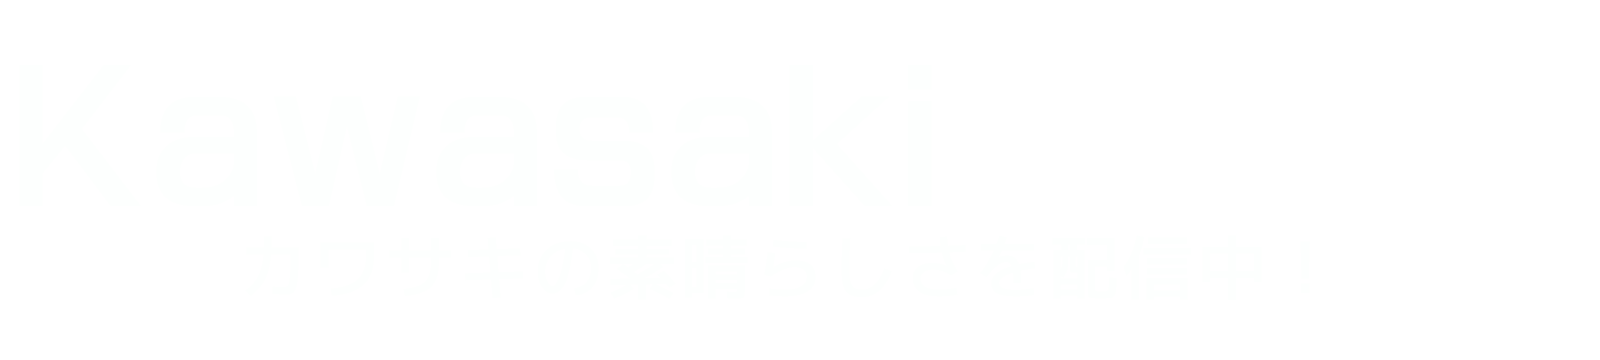 KAWASAKI-ZONE